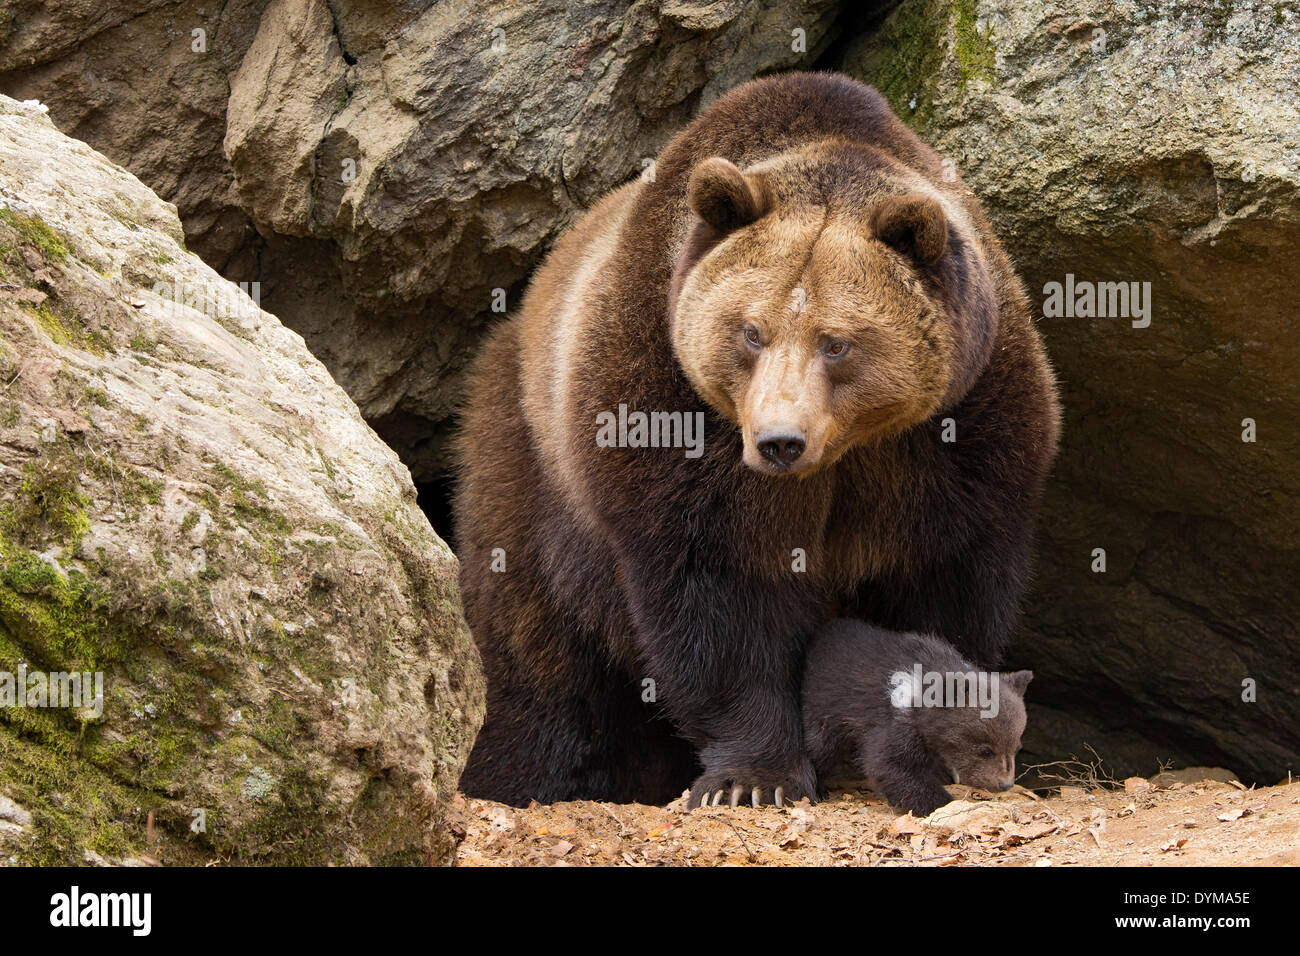 Unión oso pardo (Ursus arctos) madre con cub, 3 meses en cautiverio, alojamiento de animales, el Parque Nacional del Bosque Bávaro, Baviera Foto de stock